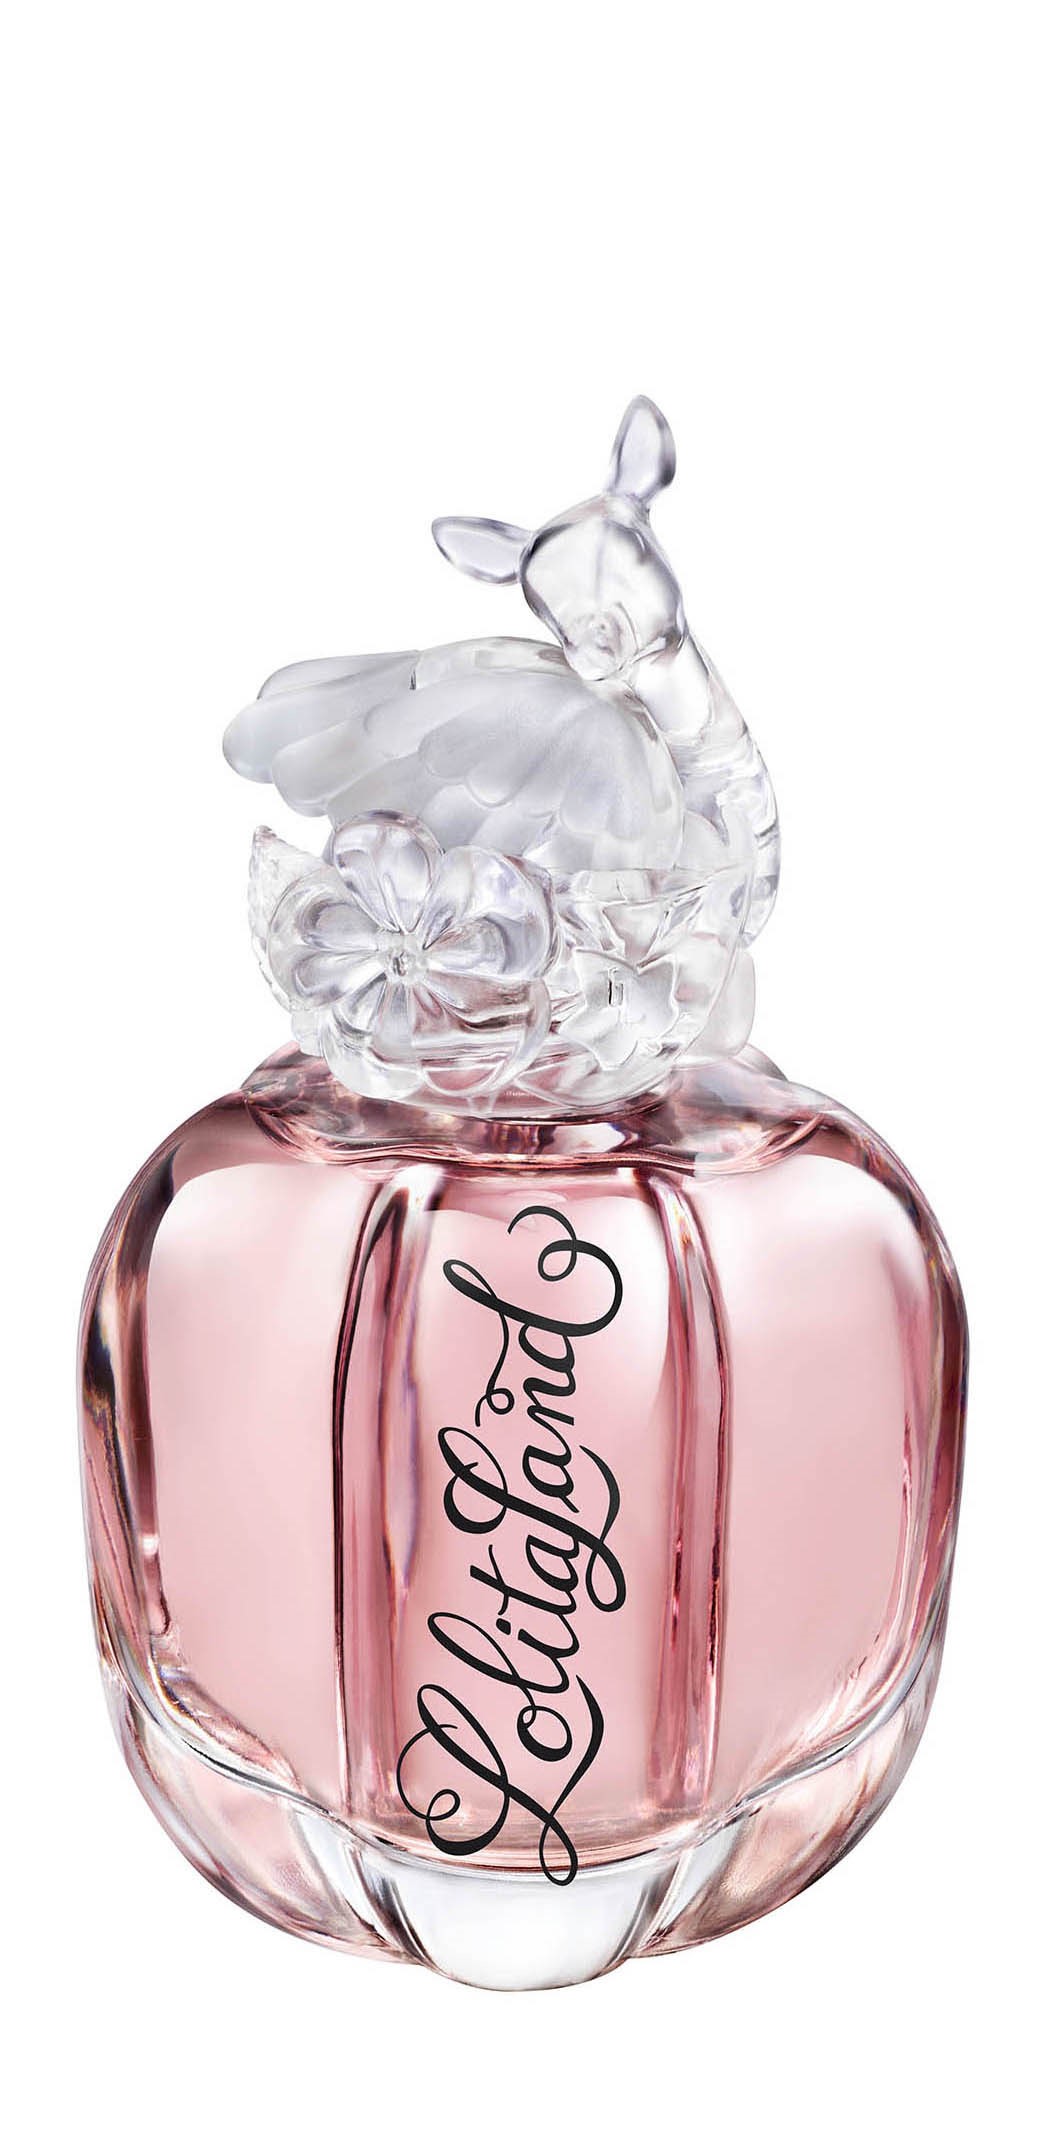 Парфюмерная вода Lolita Lempicka женская Lolitaland Eau de Parfum 40 мл